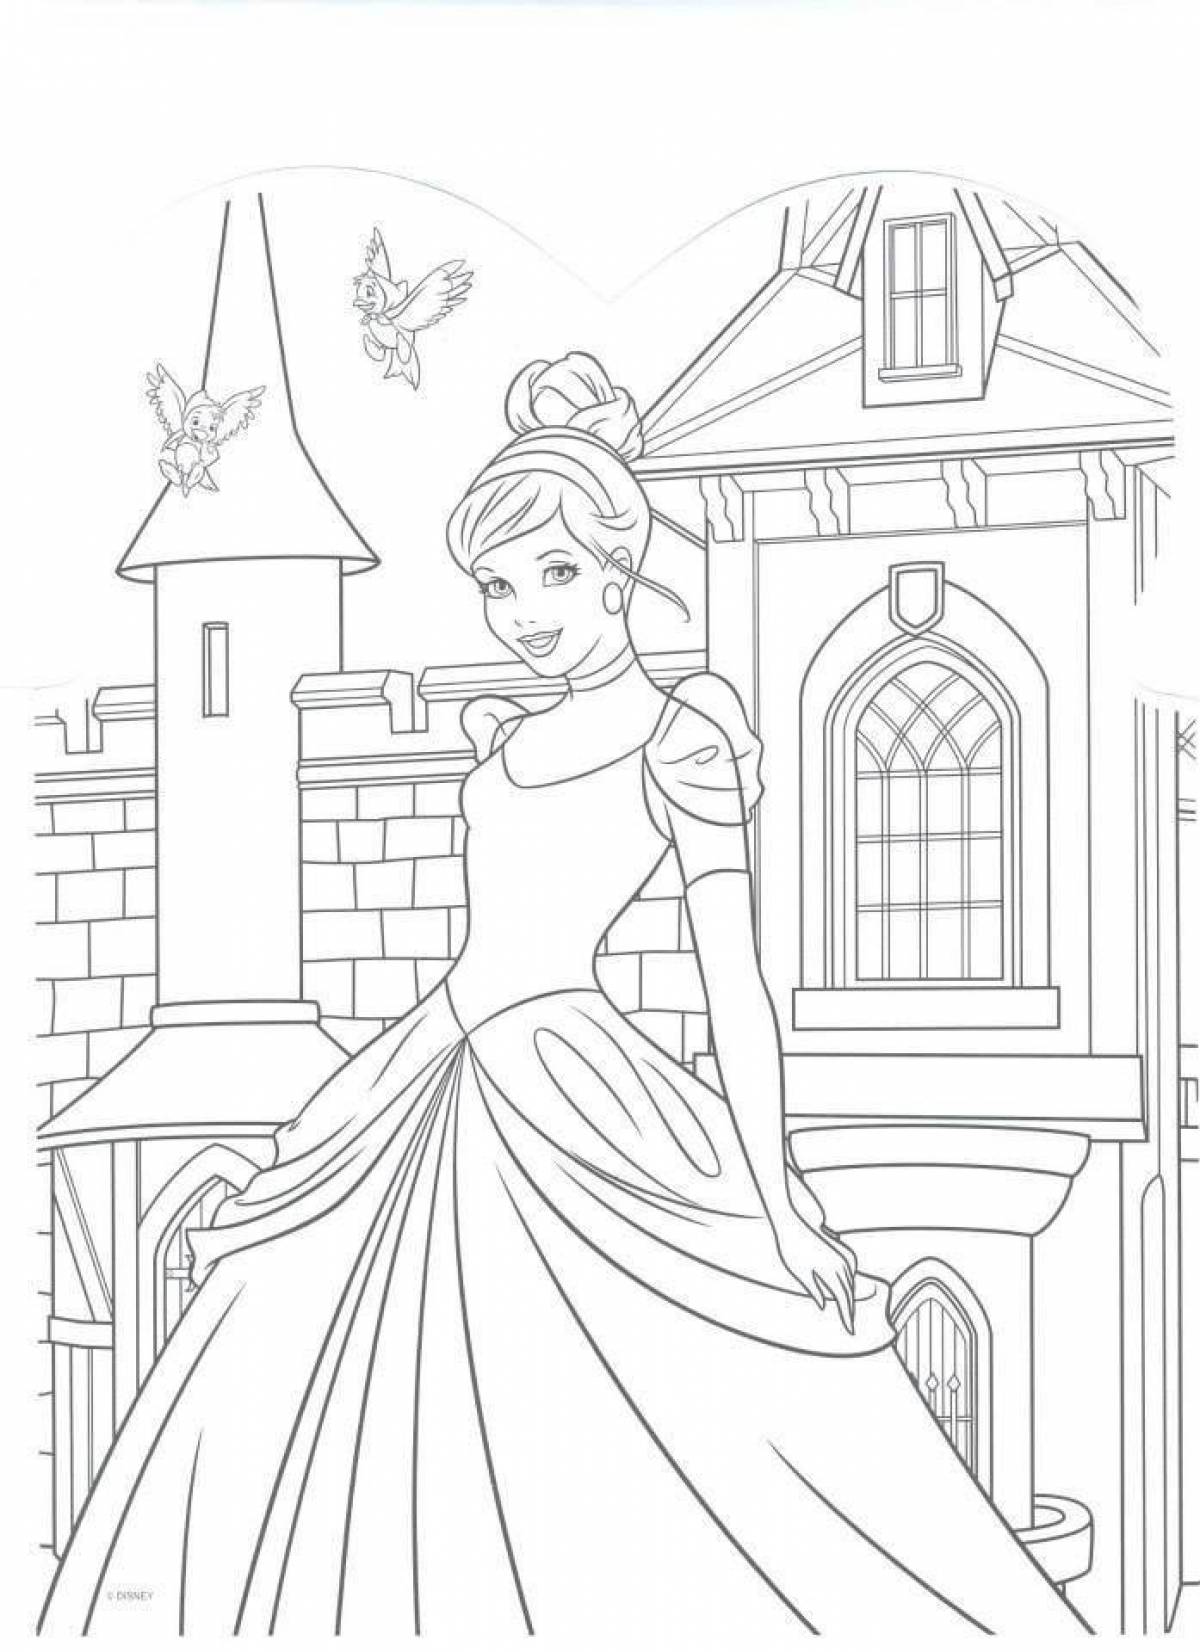 Princess castle coloring page